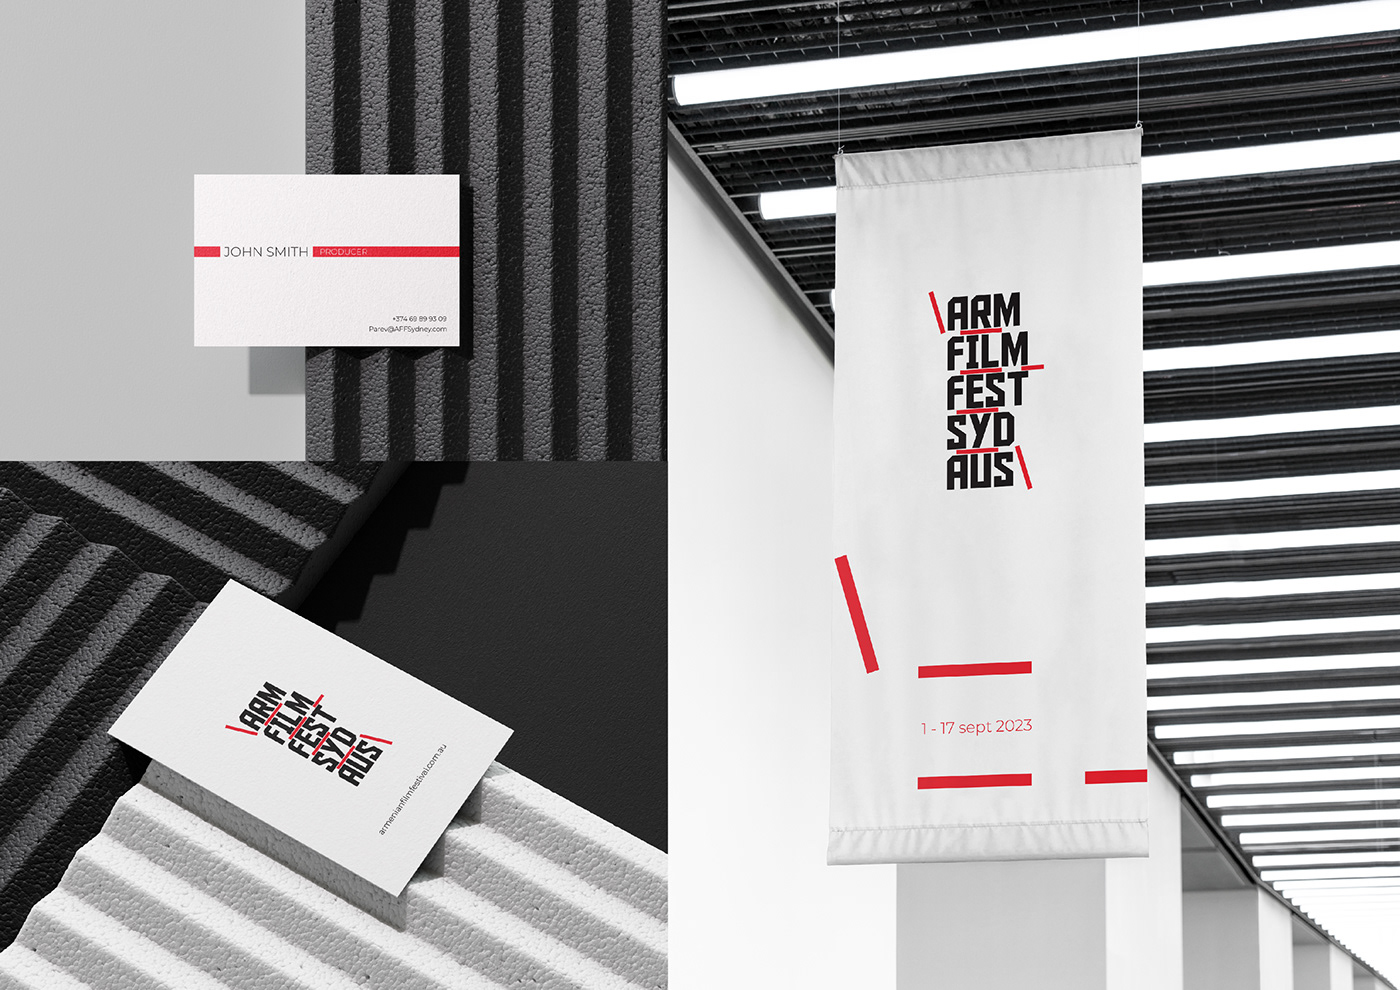 Film   festival brand identity rebranding logo adobe illustrator Adobe Photoshop graphic design  visual identity typography  